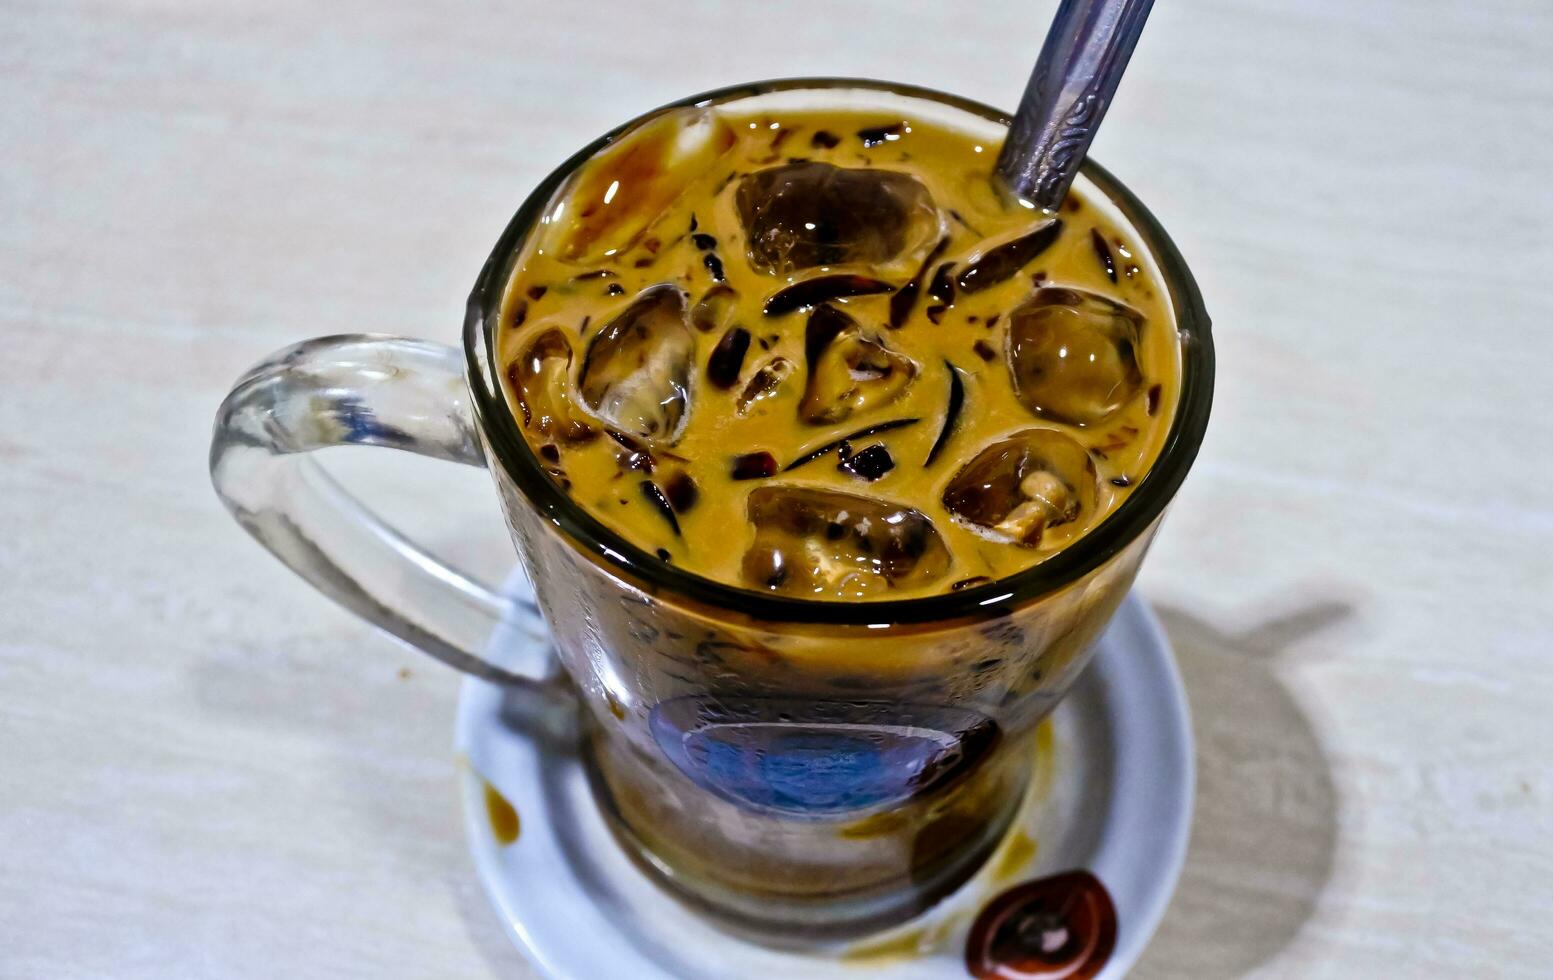 detailopname visie van een glas van bevroren cappuccino koffie foto